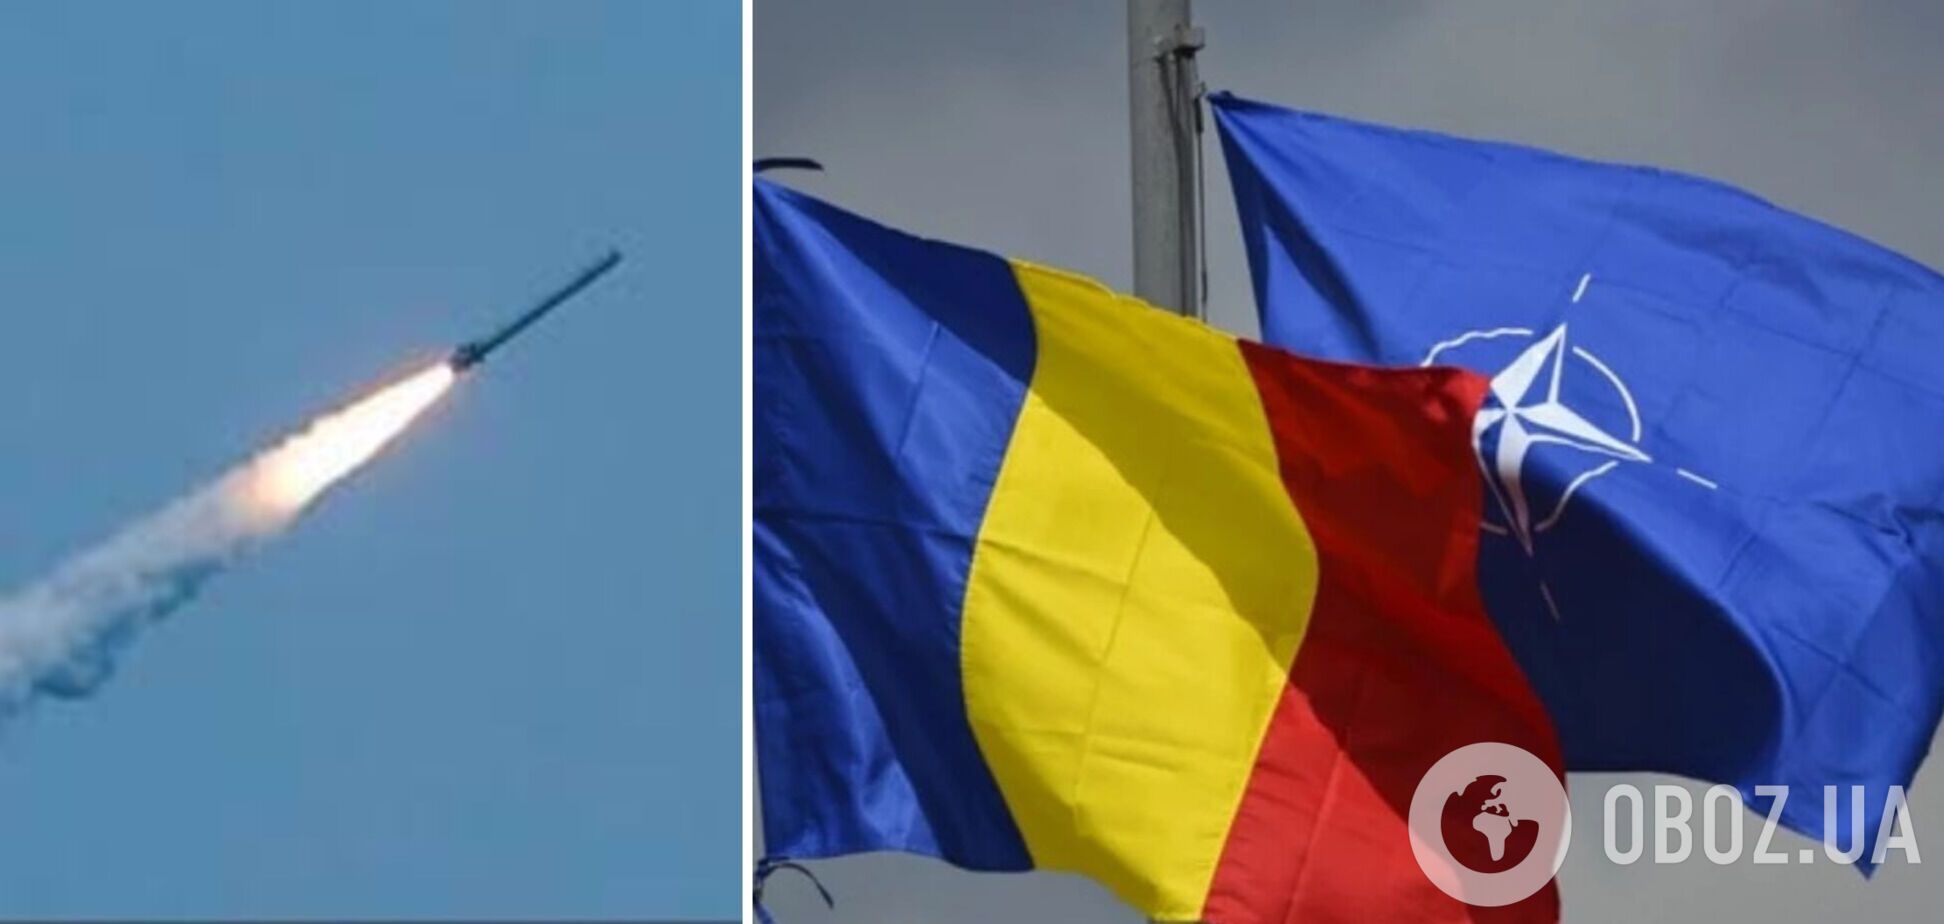 NYT: у НАТО відмовилися коментувати ймовірний проліт російської ракети над територією Румунії